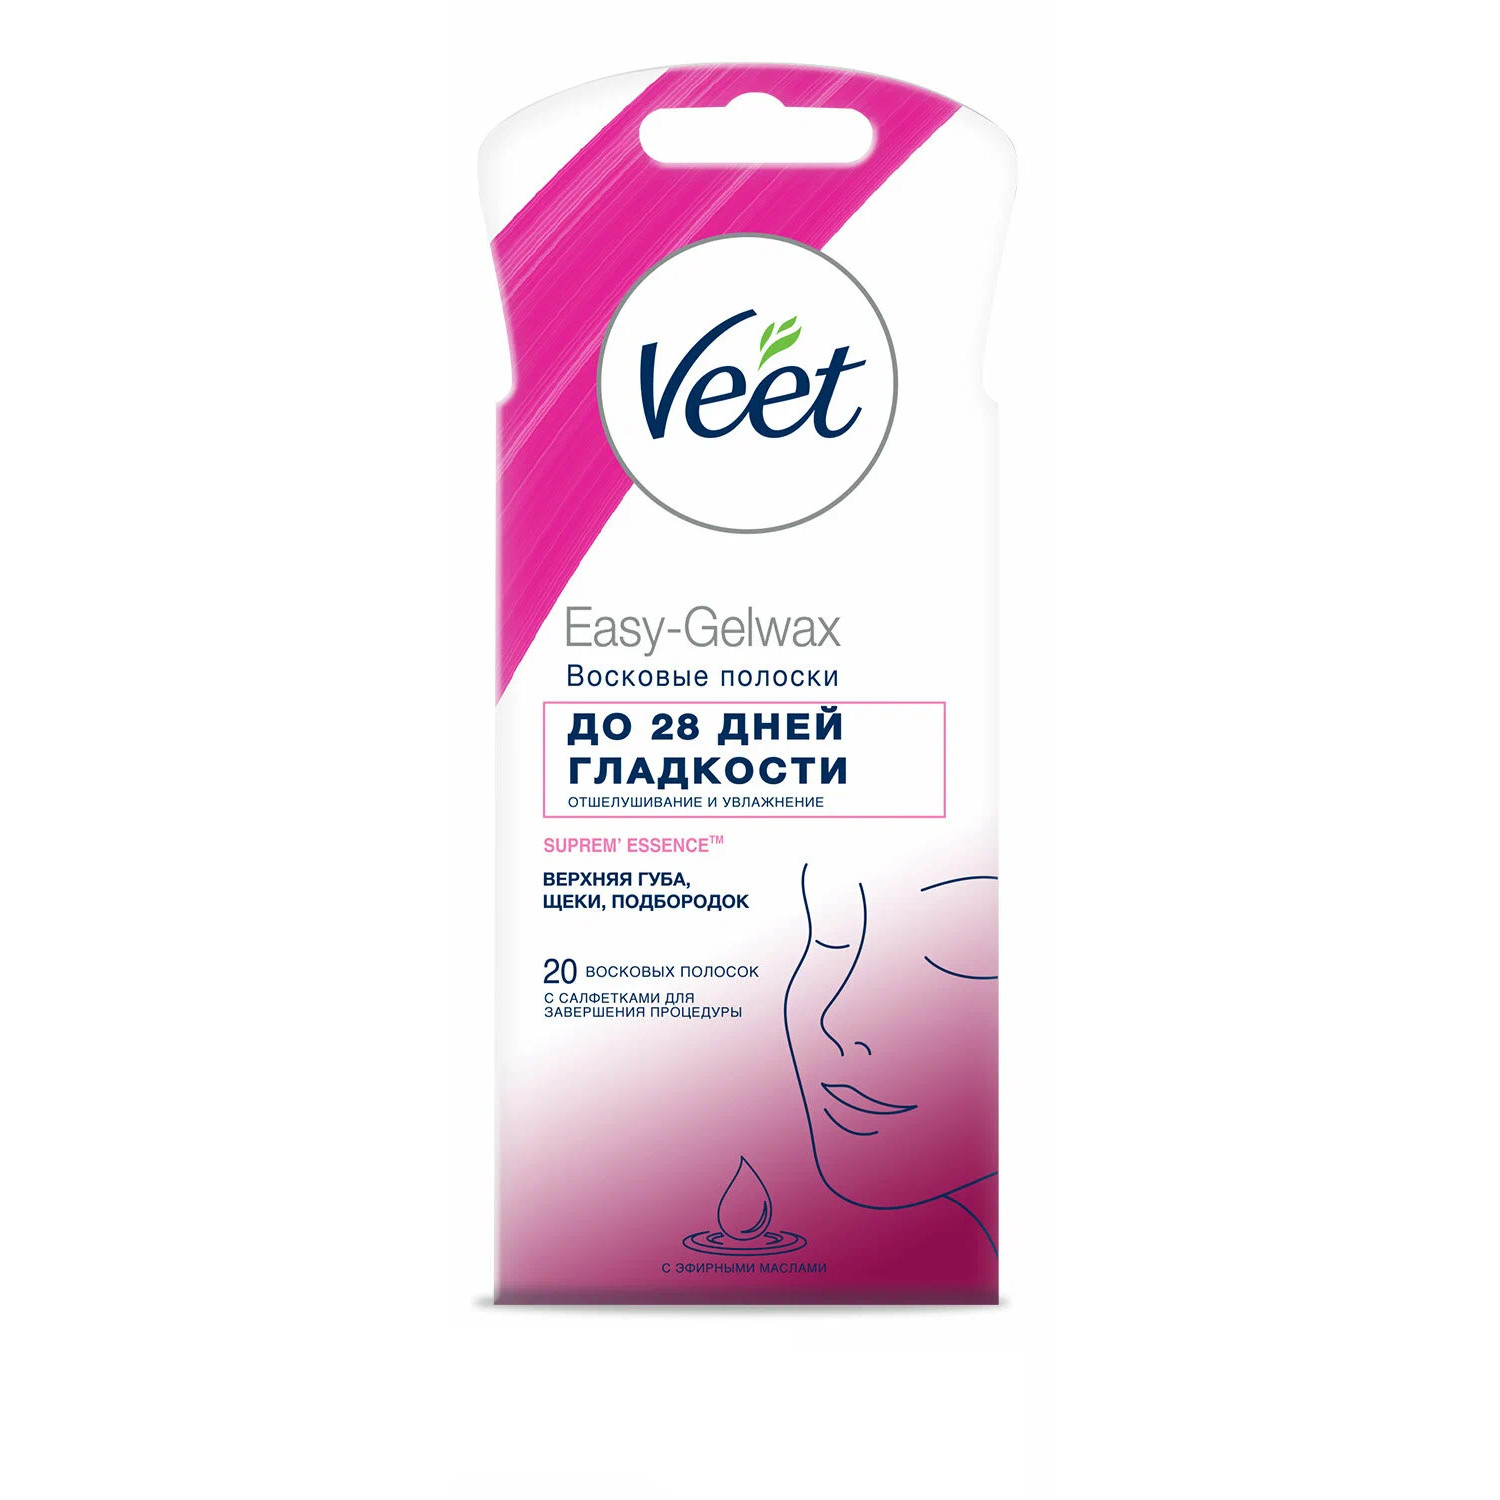 Восковые полоски для лица Veet Suprem Essence 20 шт восковые полоски velvet интенсивная витаминотерапия 20 шт